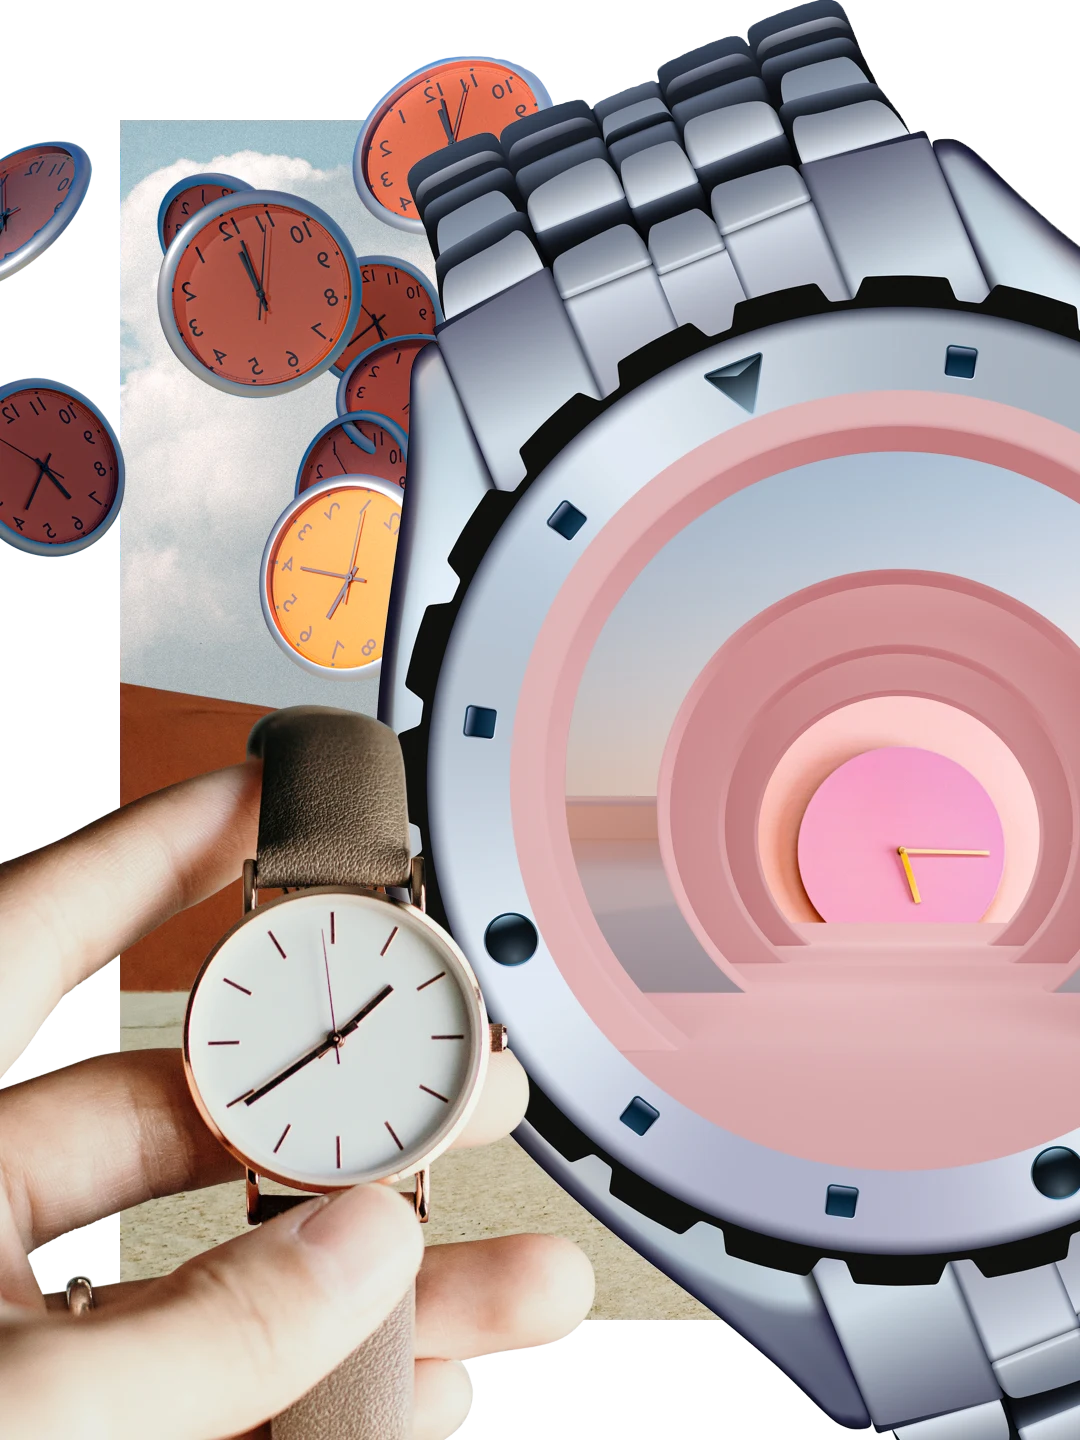 Collage de diferentes relojes y relojes pulsera. Mano de piel clara sosteniendo un reloj pulsera de cuero. Reloj pulsera metálico grande en el centro. Reloj rosa con agujas amarillas. Relojes en tonos de marrón y dorado flotando entre nubes.
